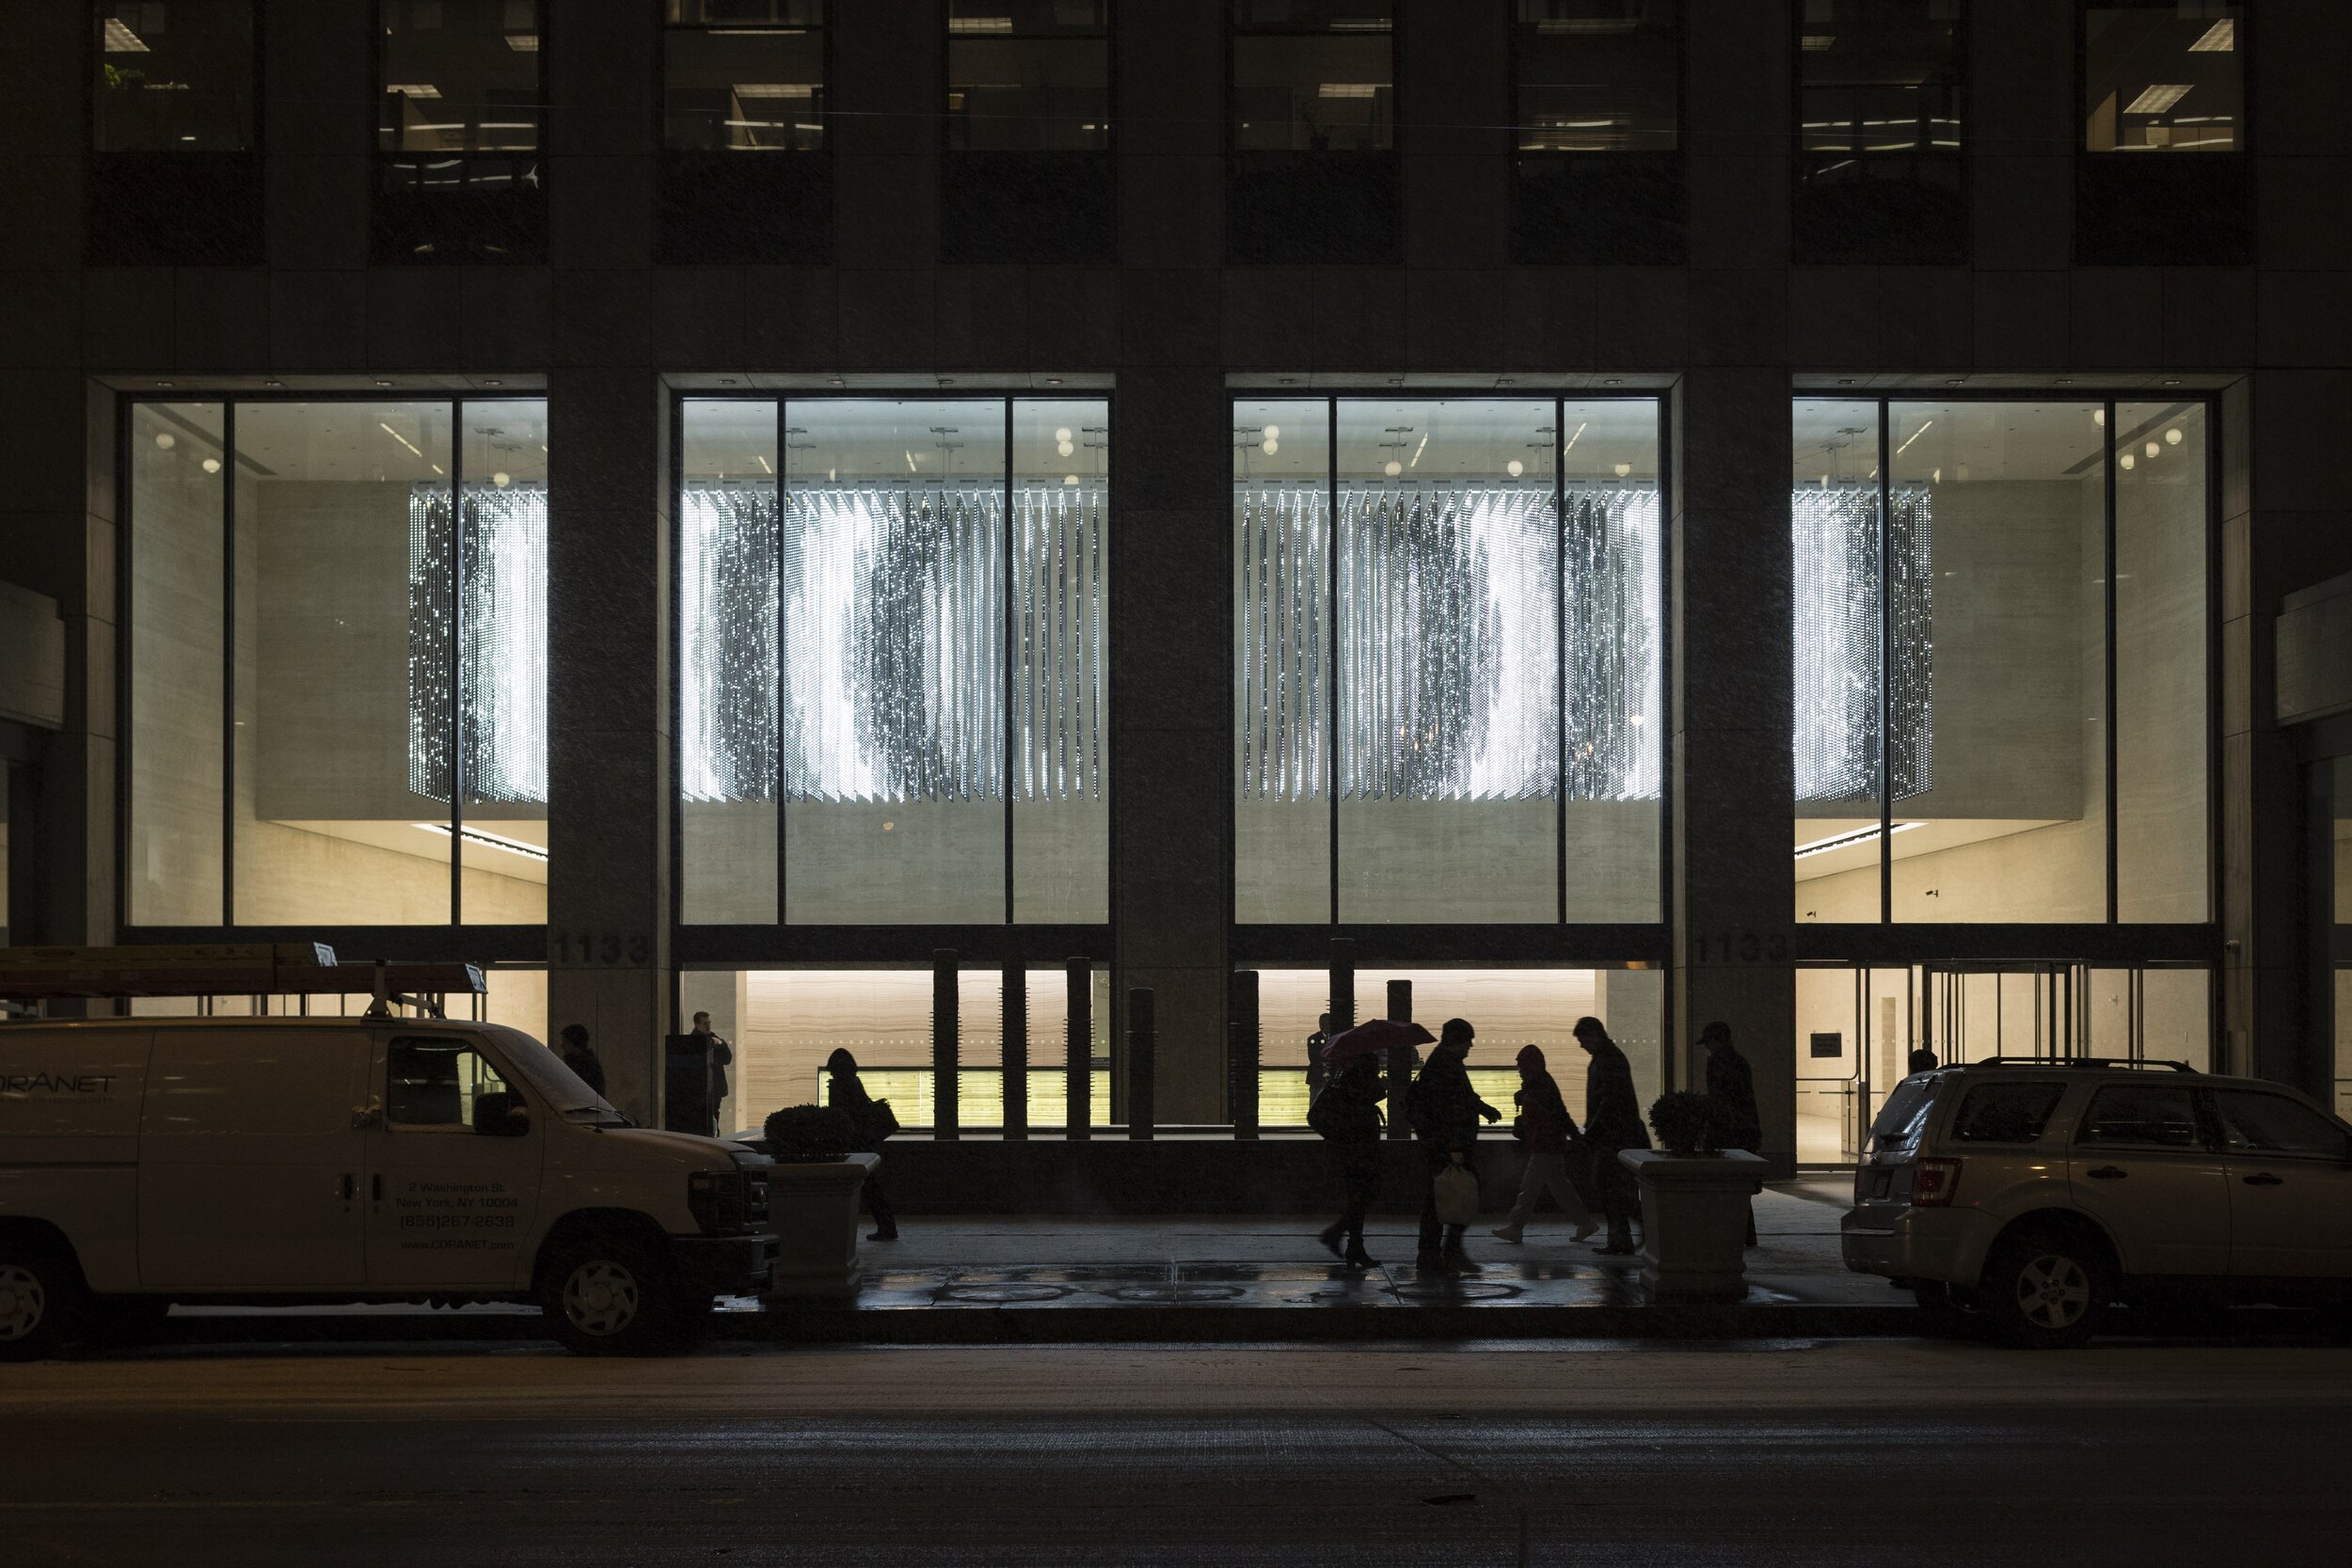 Volume (Durst), 2013 - Durst Building, New York, NY